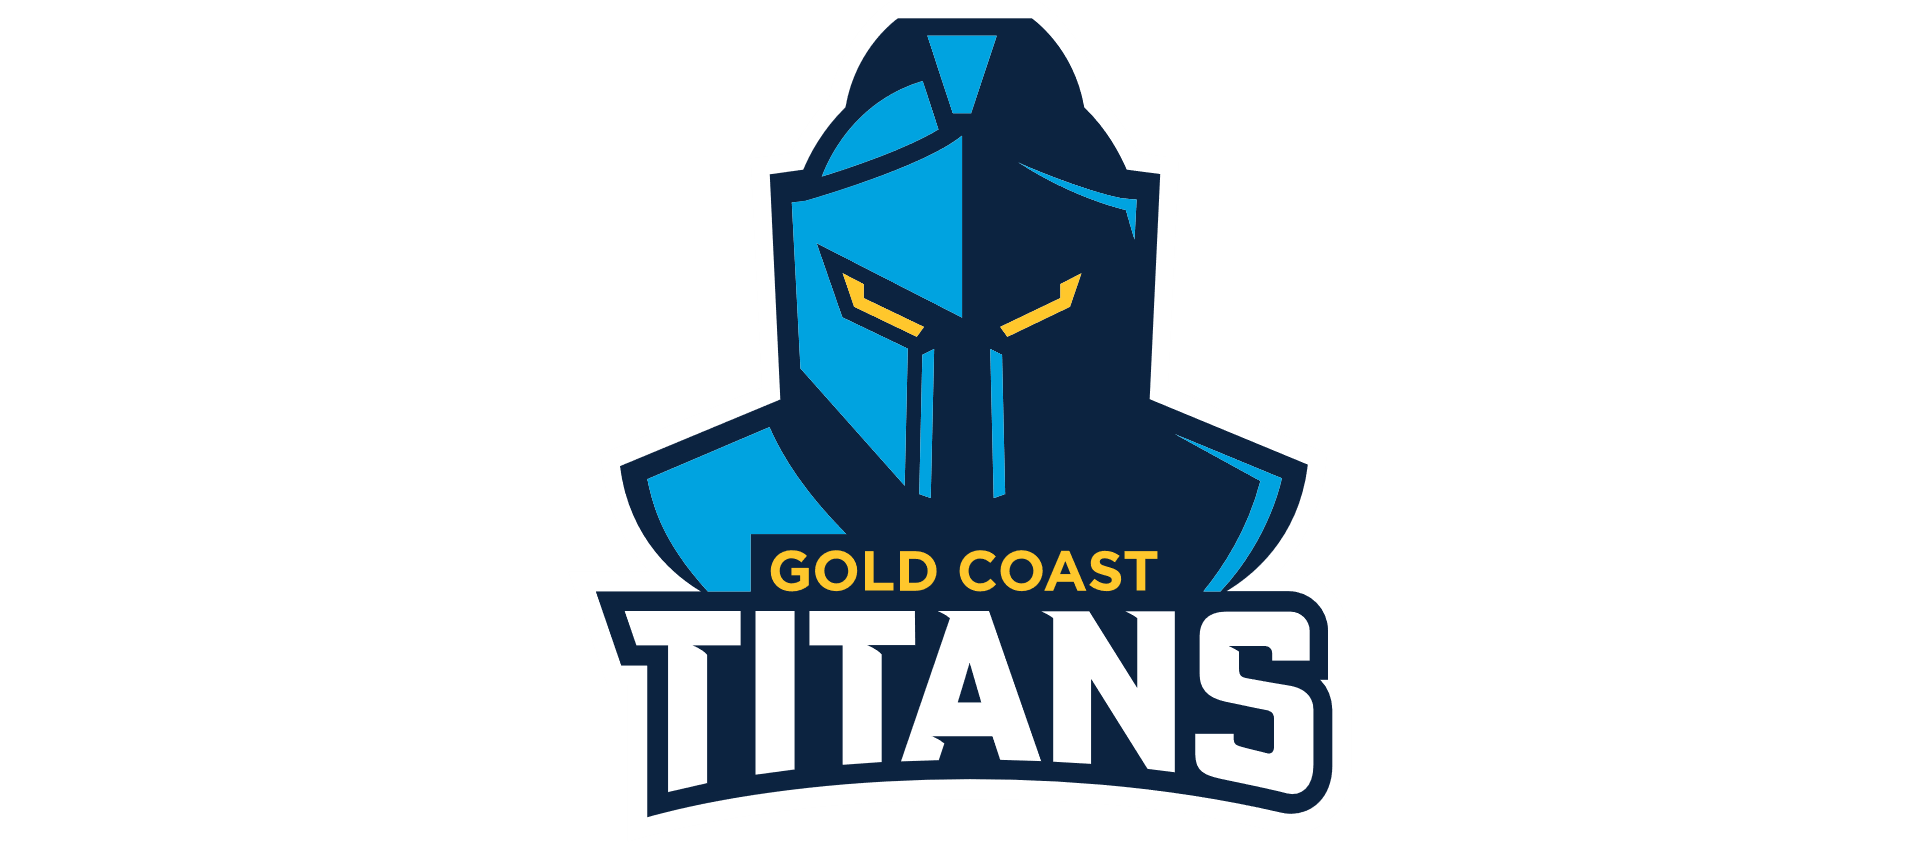 NRL titans logo